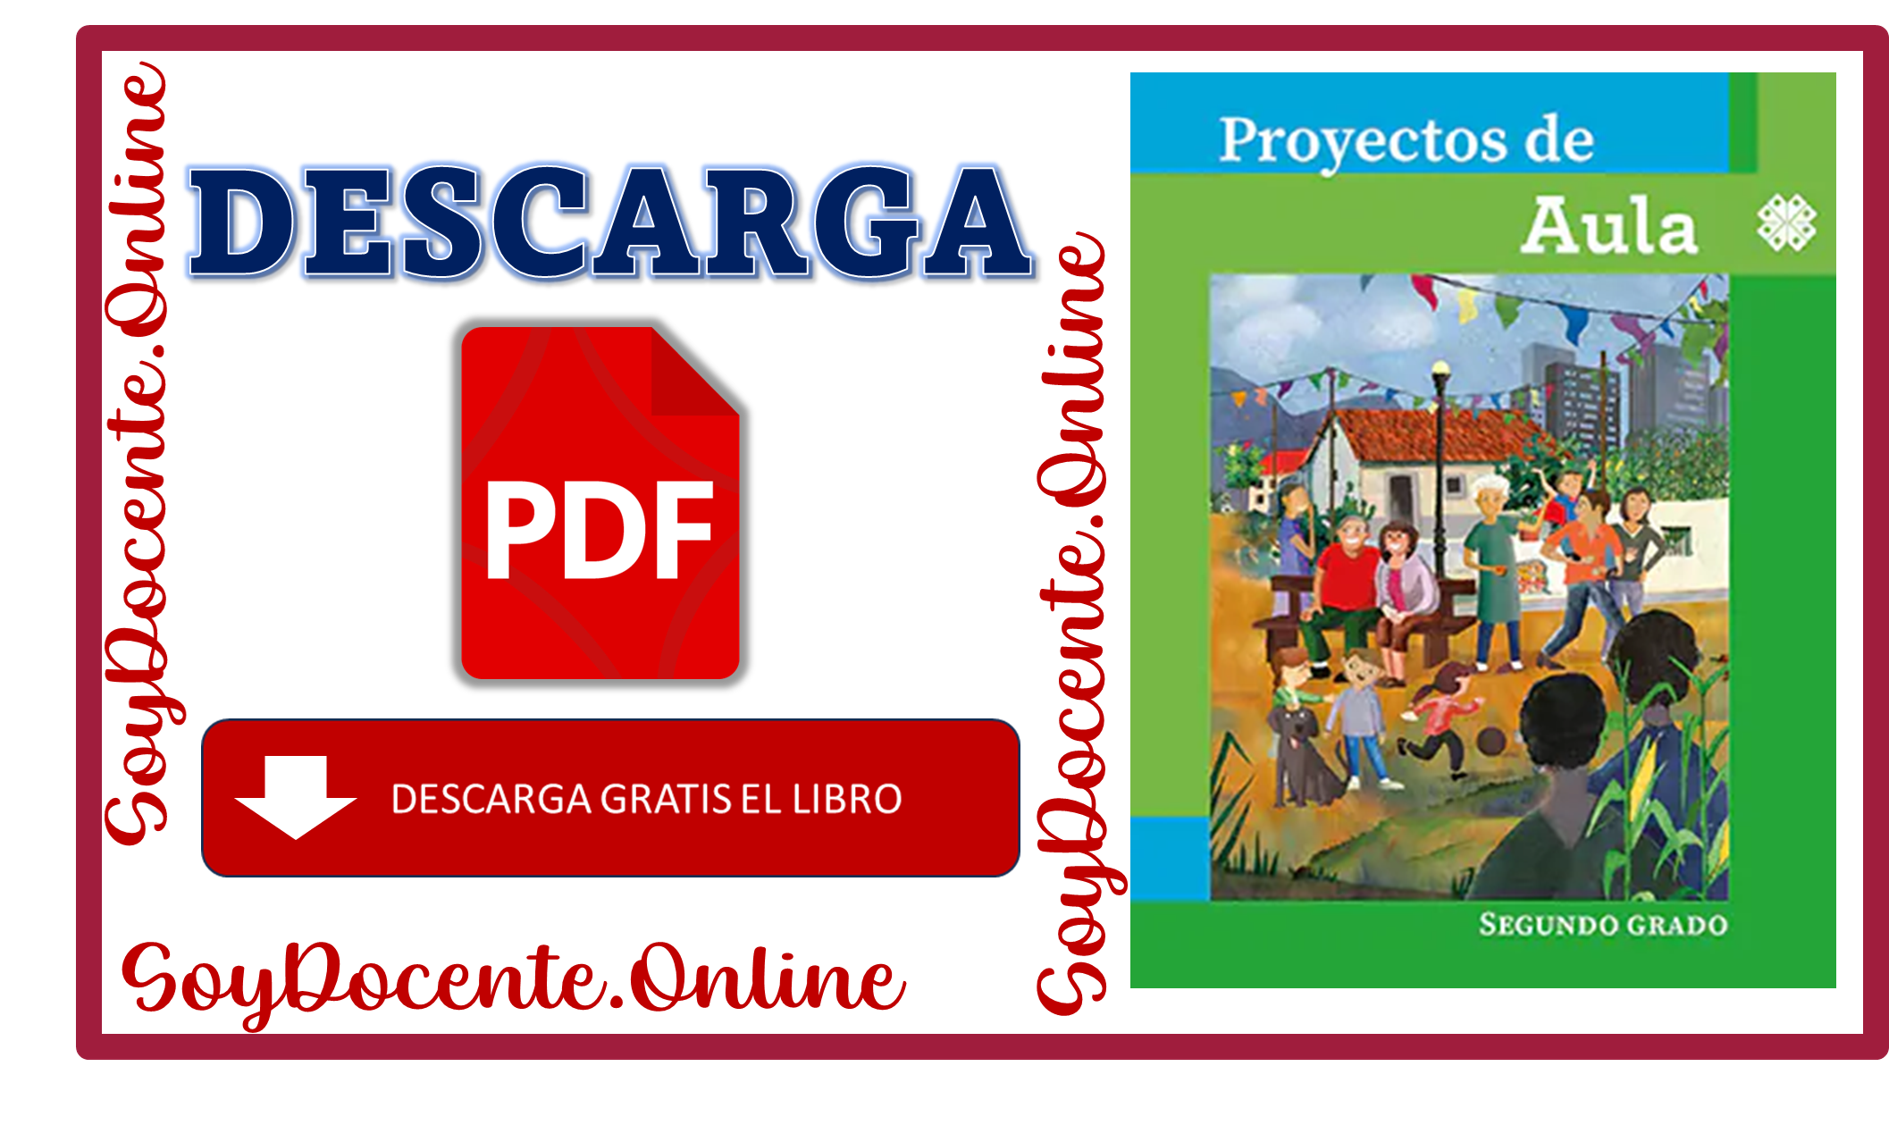 Descarga el Libro de Proyectos de Aula Segundo Grado de Primaria de la SEP y CONALITEG, en PDF Gratis.